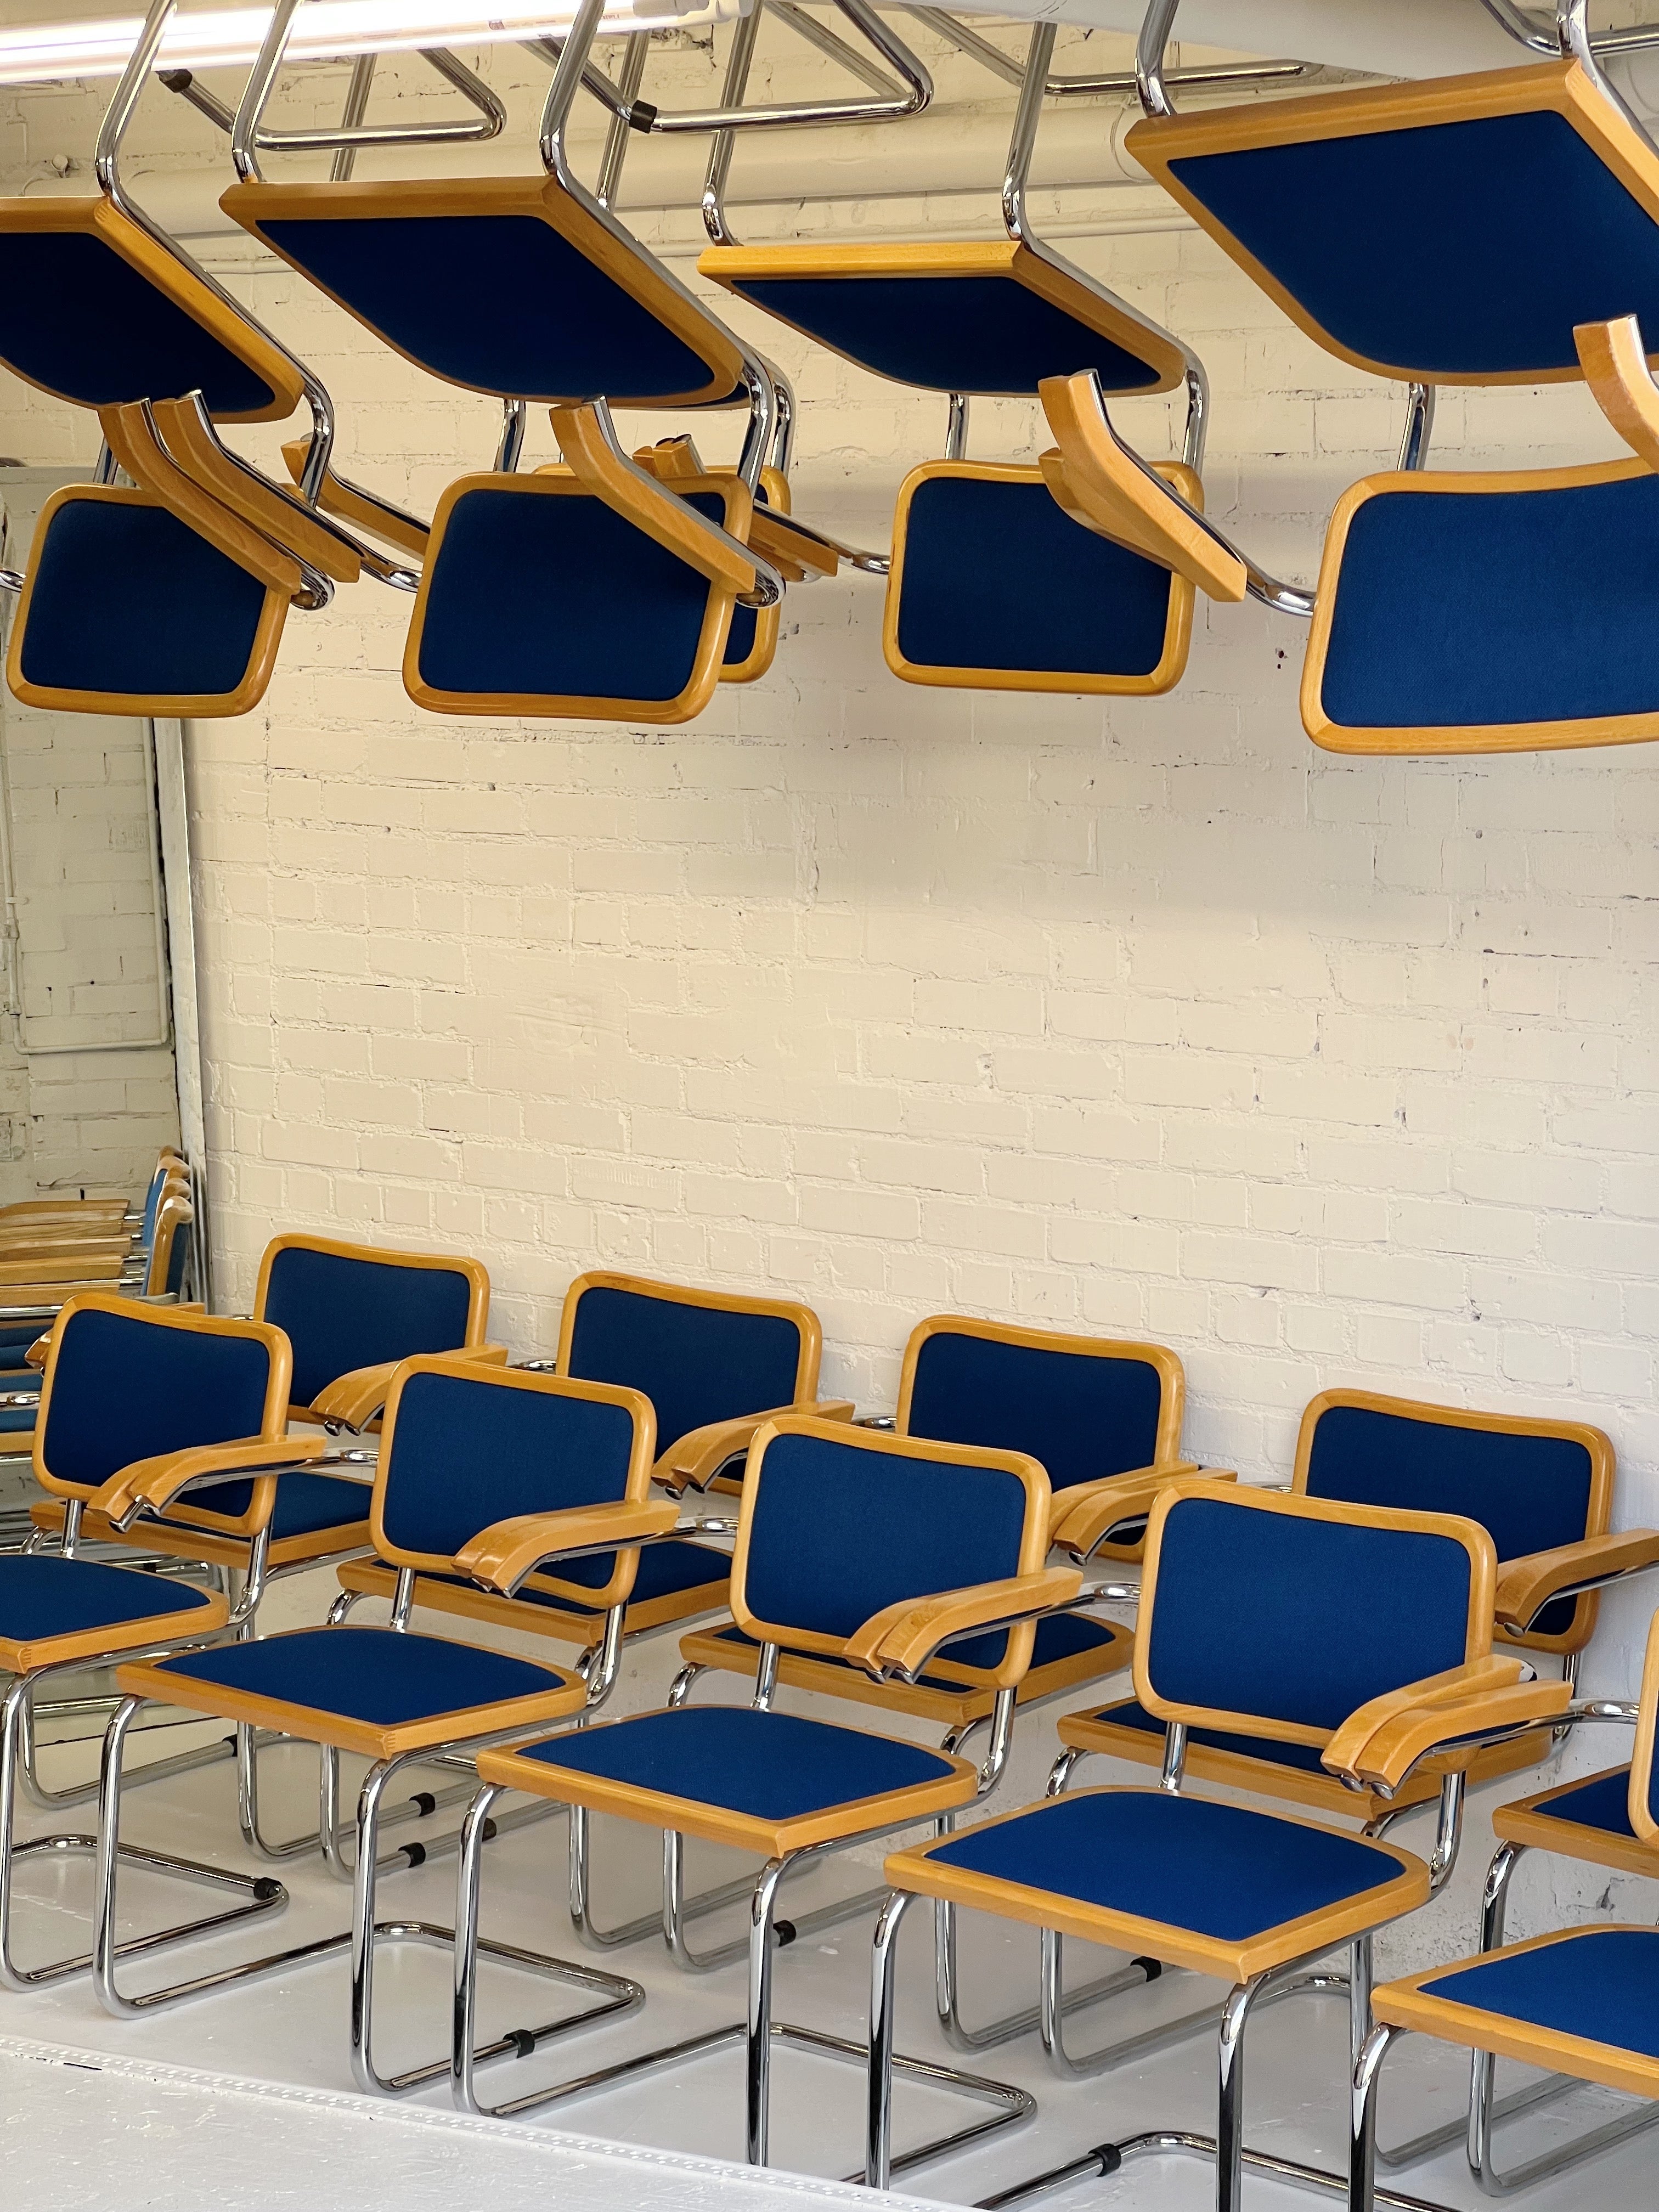 Chaises de salle à manger de style Cecsa des années 1980 par Loewenstein. Rare revêtement bleu cobalt avec cadres chromés, garniture supérieure en bois et accoudoirs. 30 disponibles. Tous ont des accoudoirs.

Ils ont été produits en 1983-1985 et ont